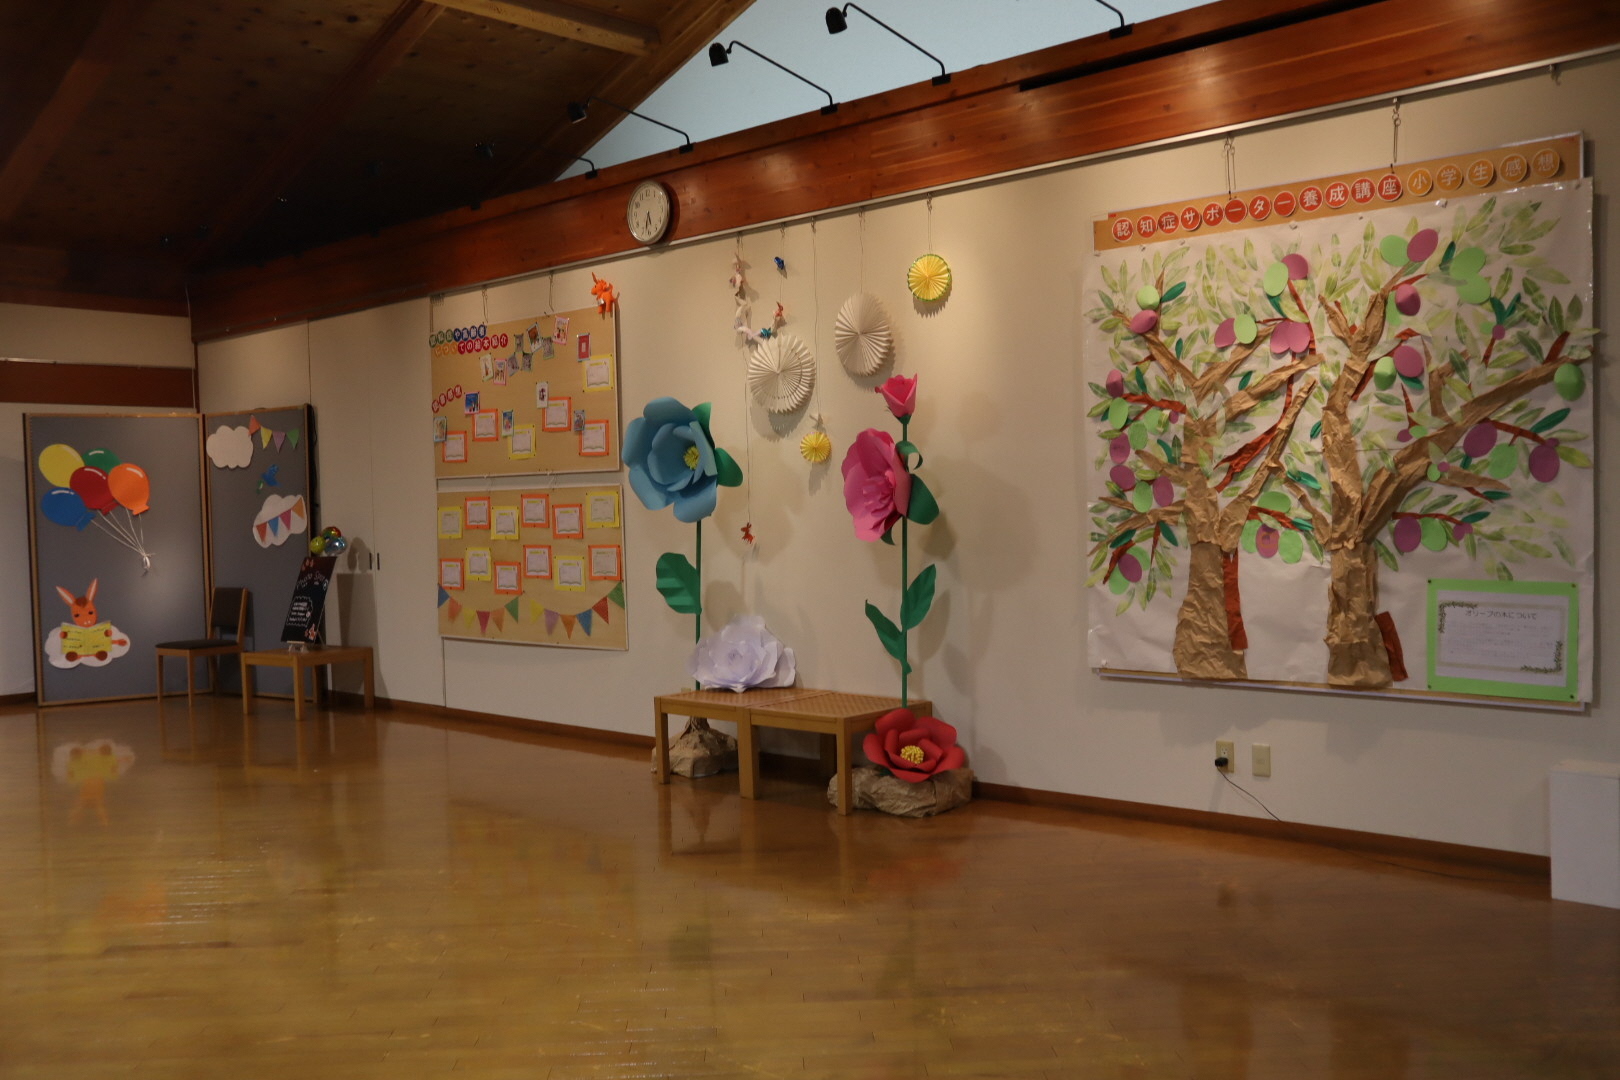 中央図書館の館内展示の様子。中央に紙で作ったおおきな花のオブジェがある。